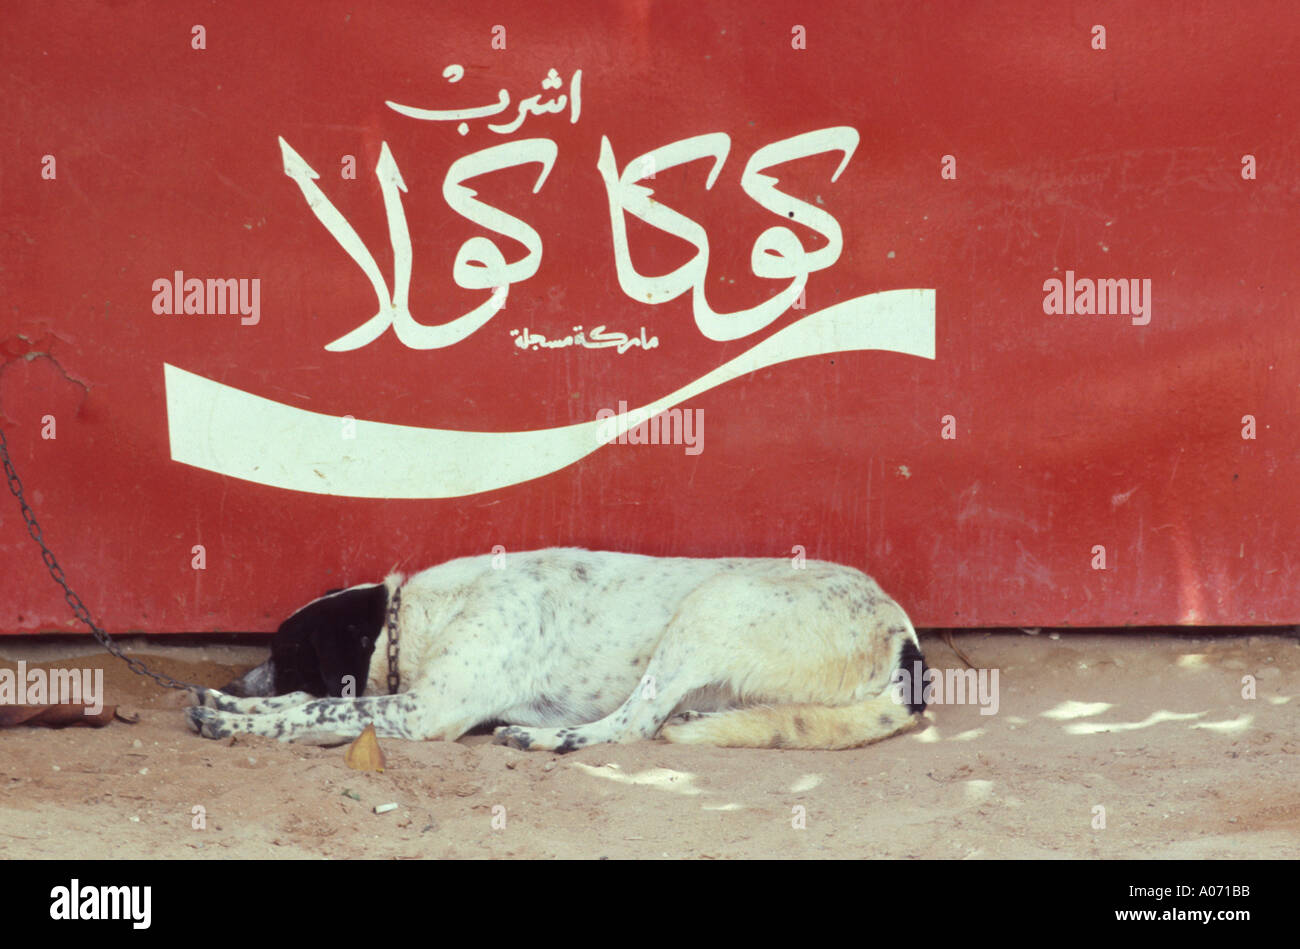 Cane di fronte all'insegna della Coca Cola in arabo, Oulidia, Marocco Foto Stock